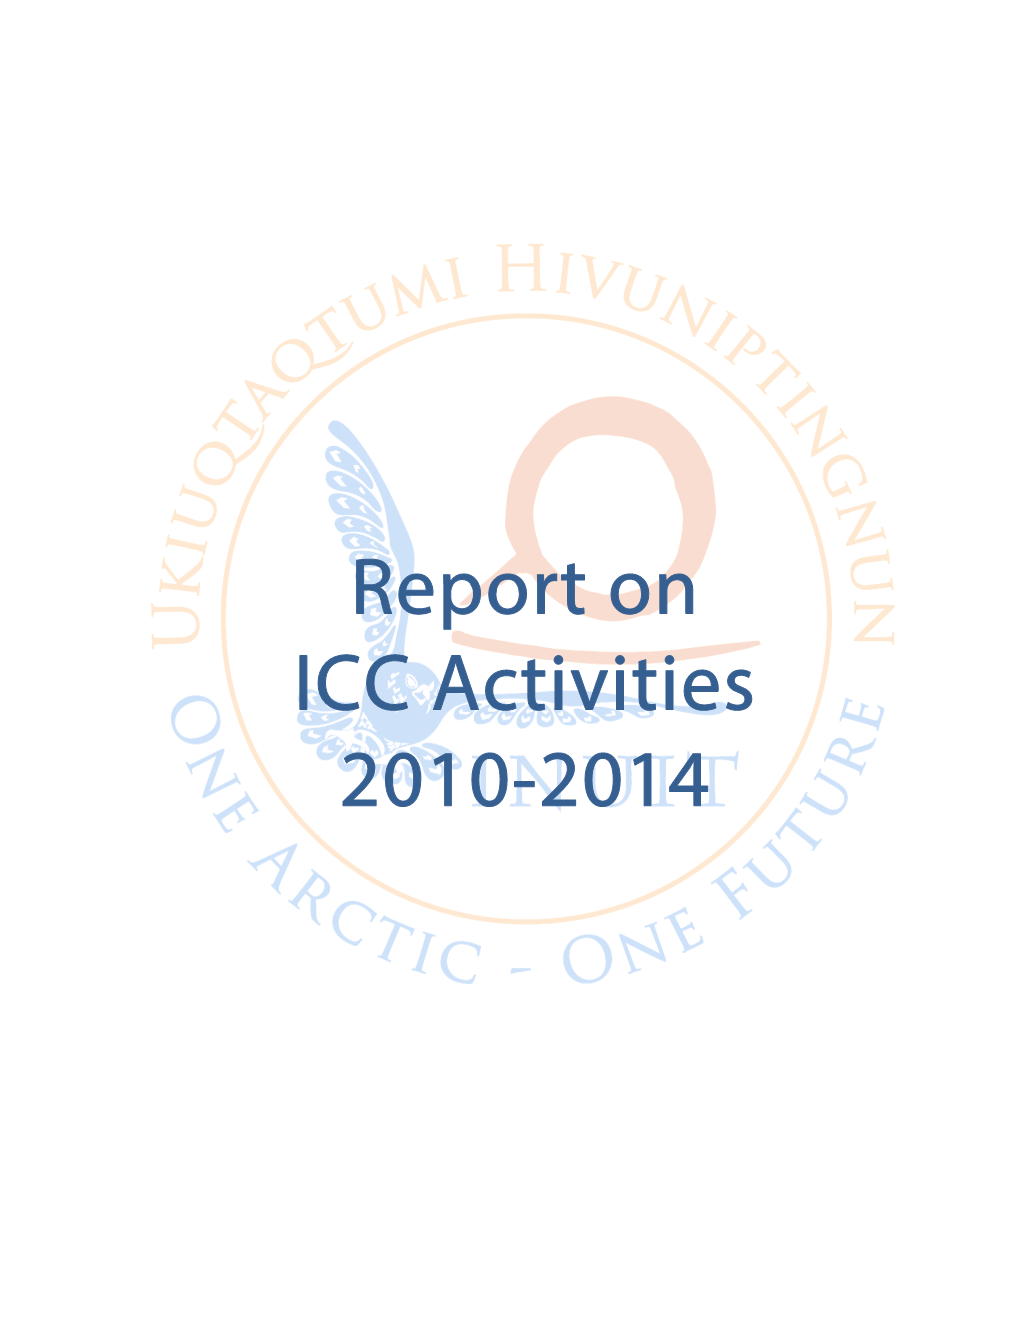 Report on ICC Activities 2010-2014